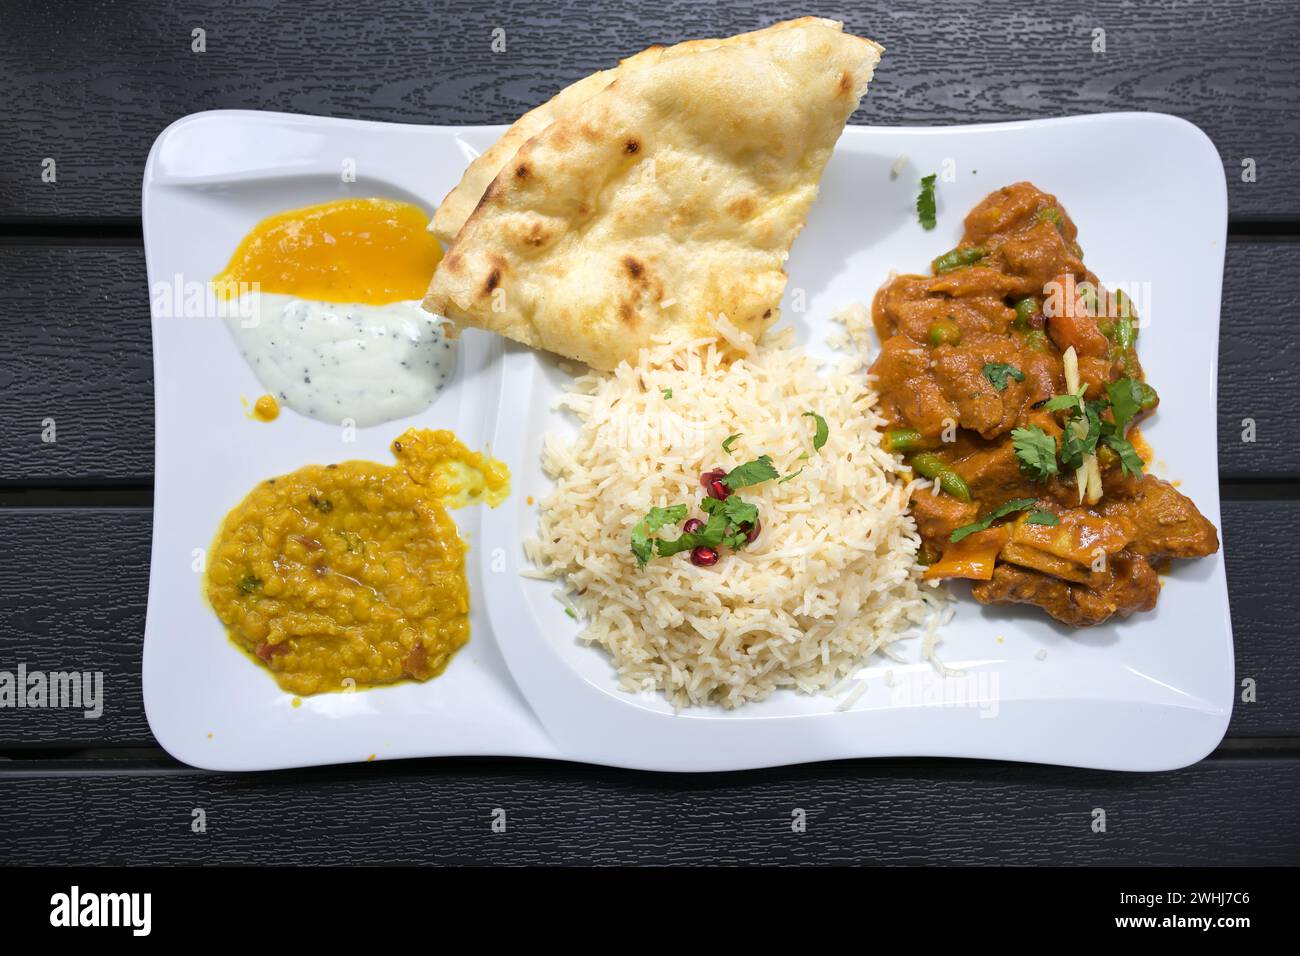 Plat indien de viande de bœuf avec sauce, riz, pain, lentilles et trempettes, servi sur une assiette blanche et une table sombre, vue en haut angle fr Banque D'Images